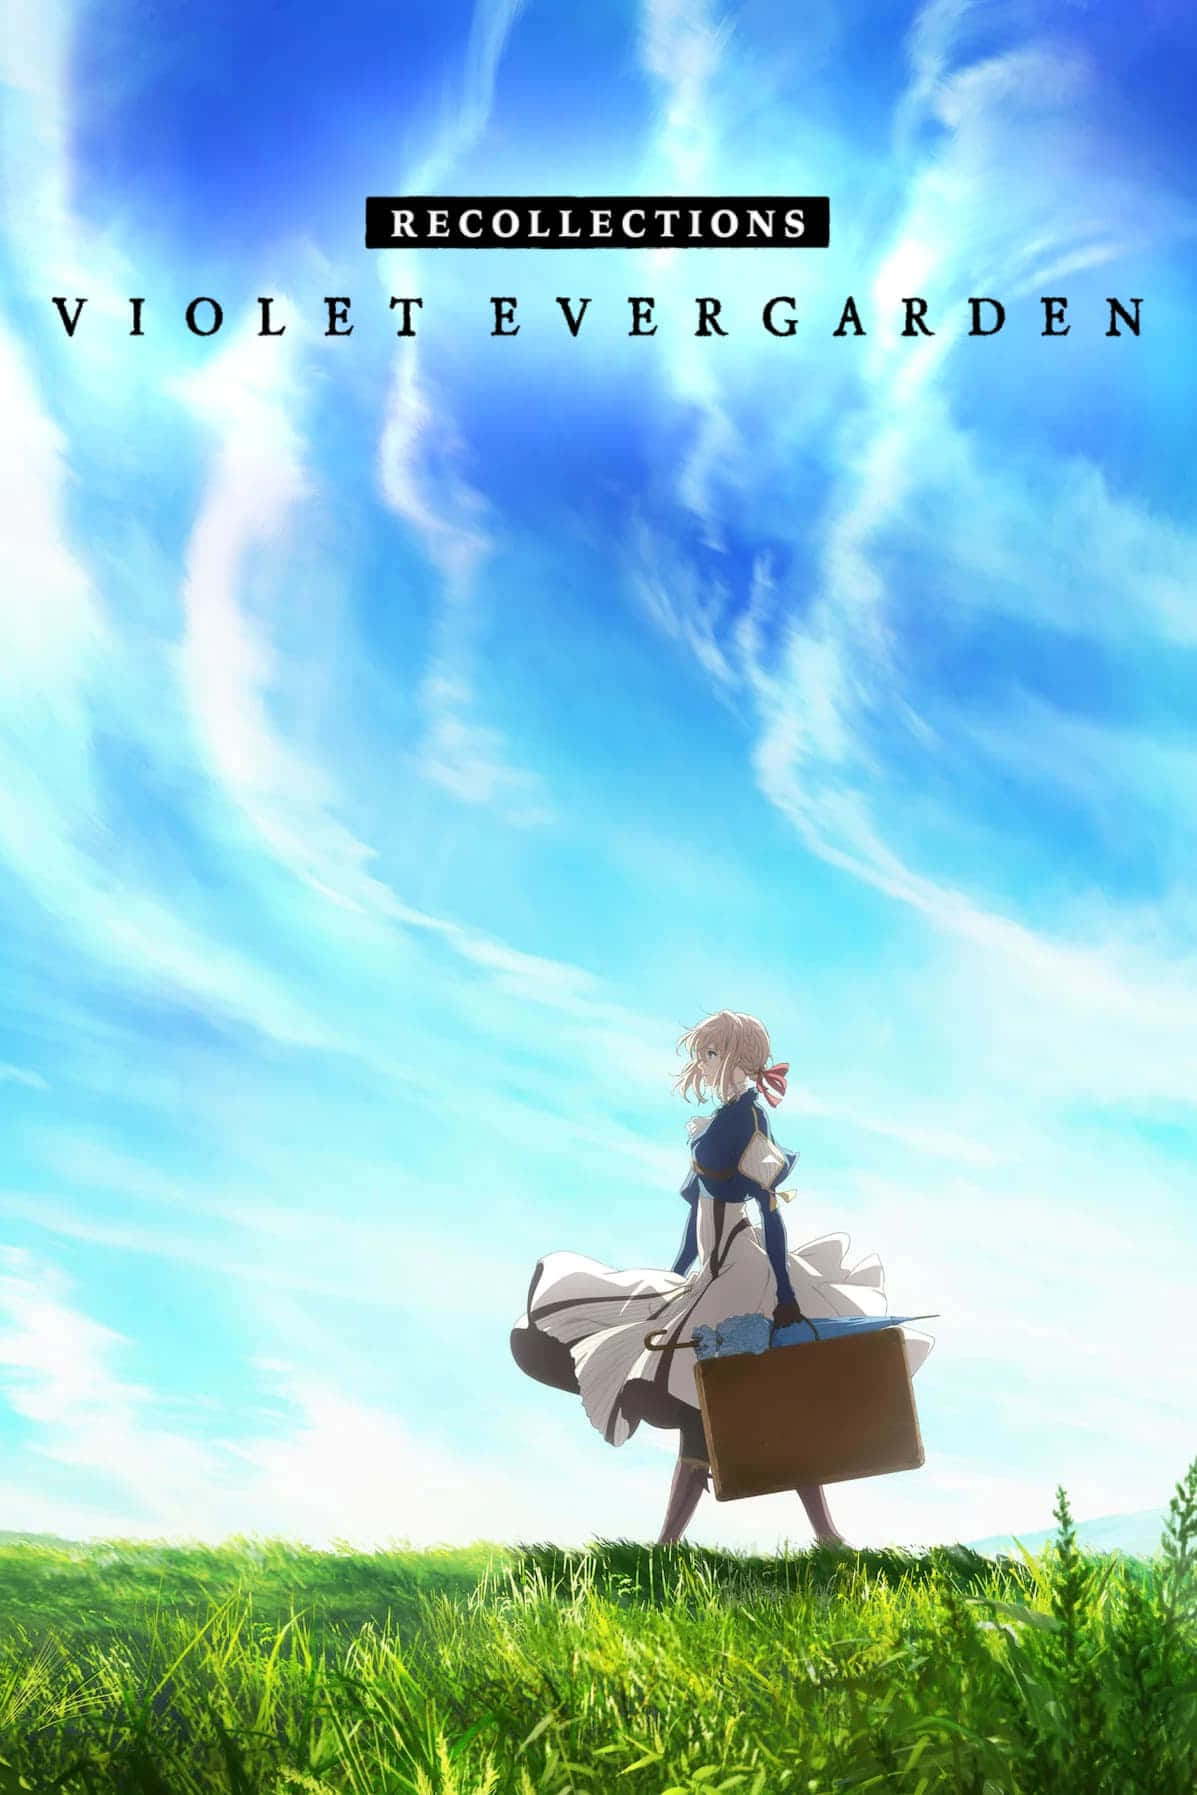 Imagendel Afiche De Violet Evergarden Recollections.